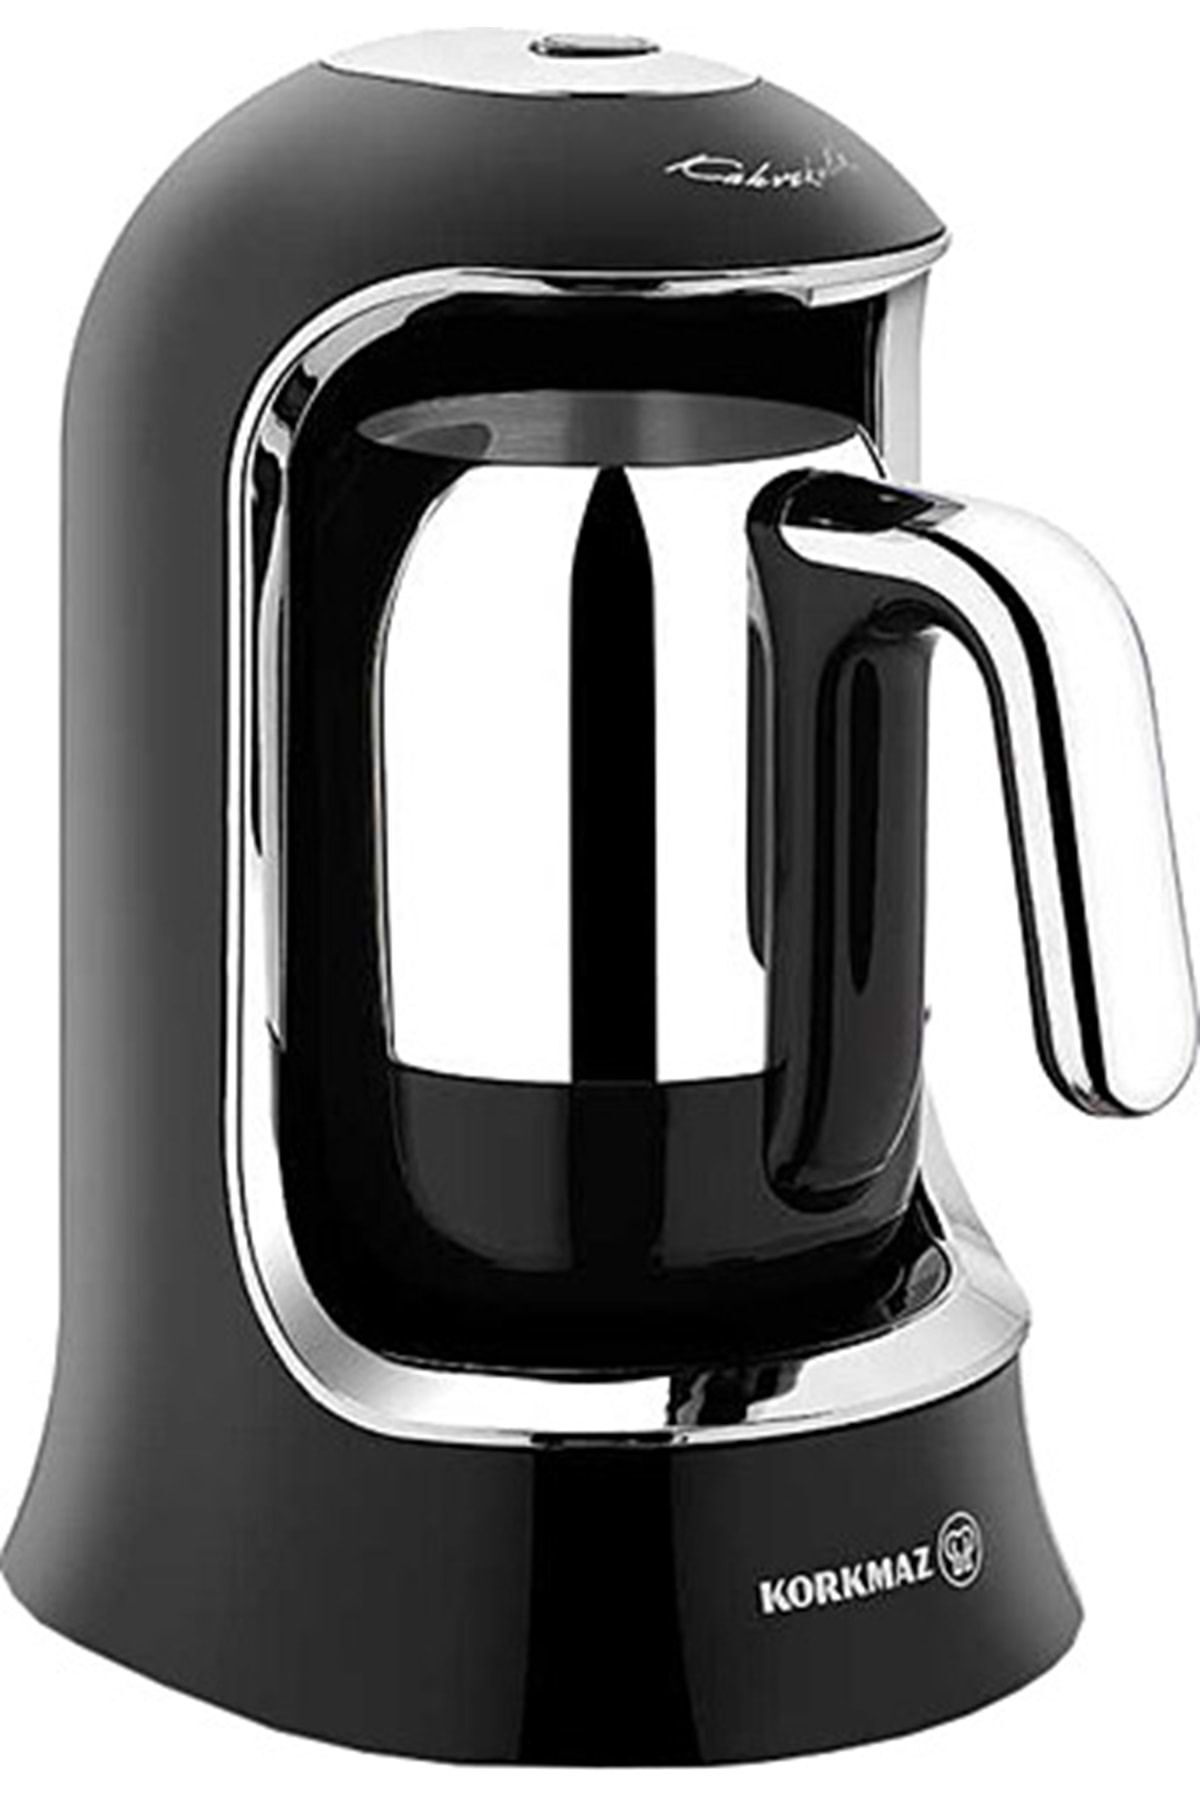 KORKMAZ A860-07 Kahvekolik Siyah/krom Otomatik Kahve Makinesi